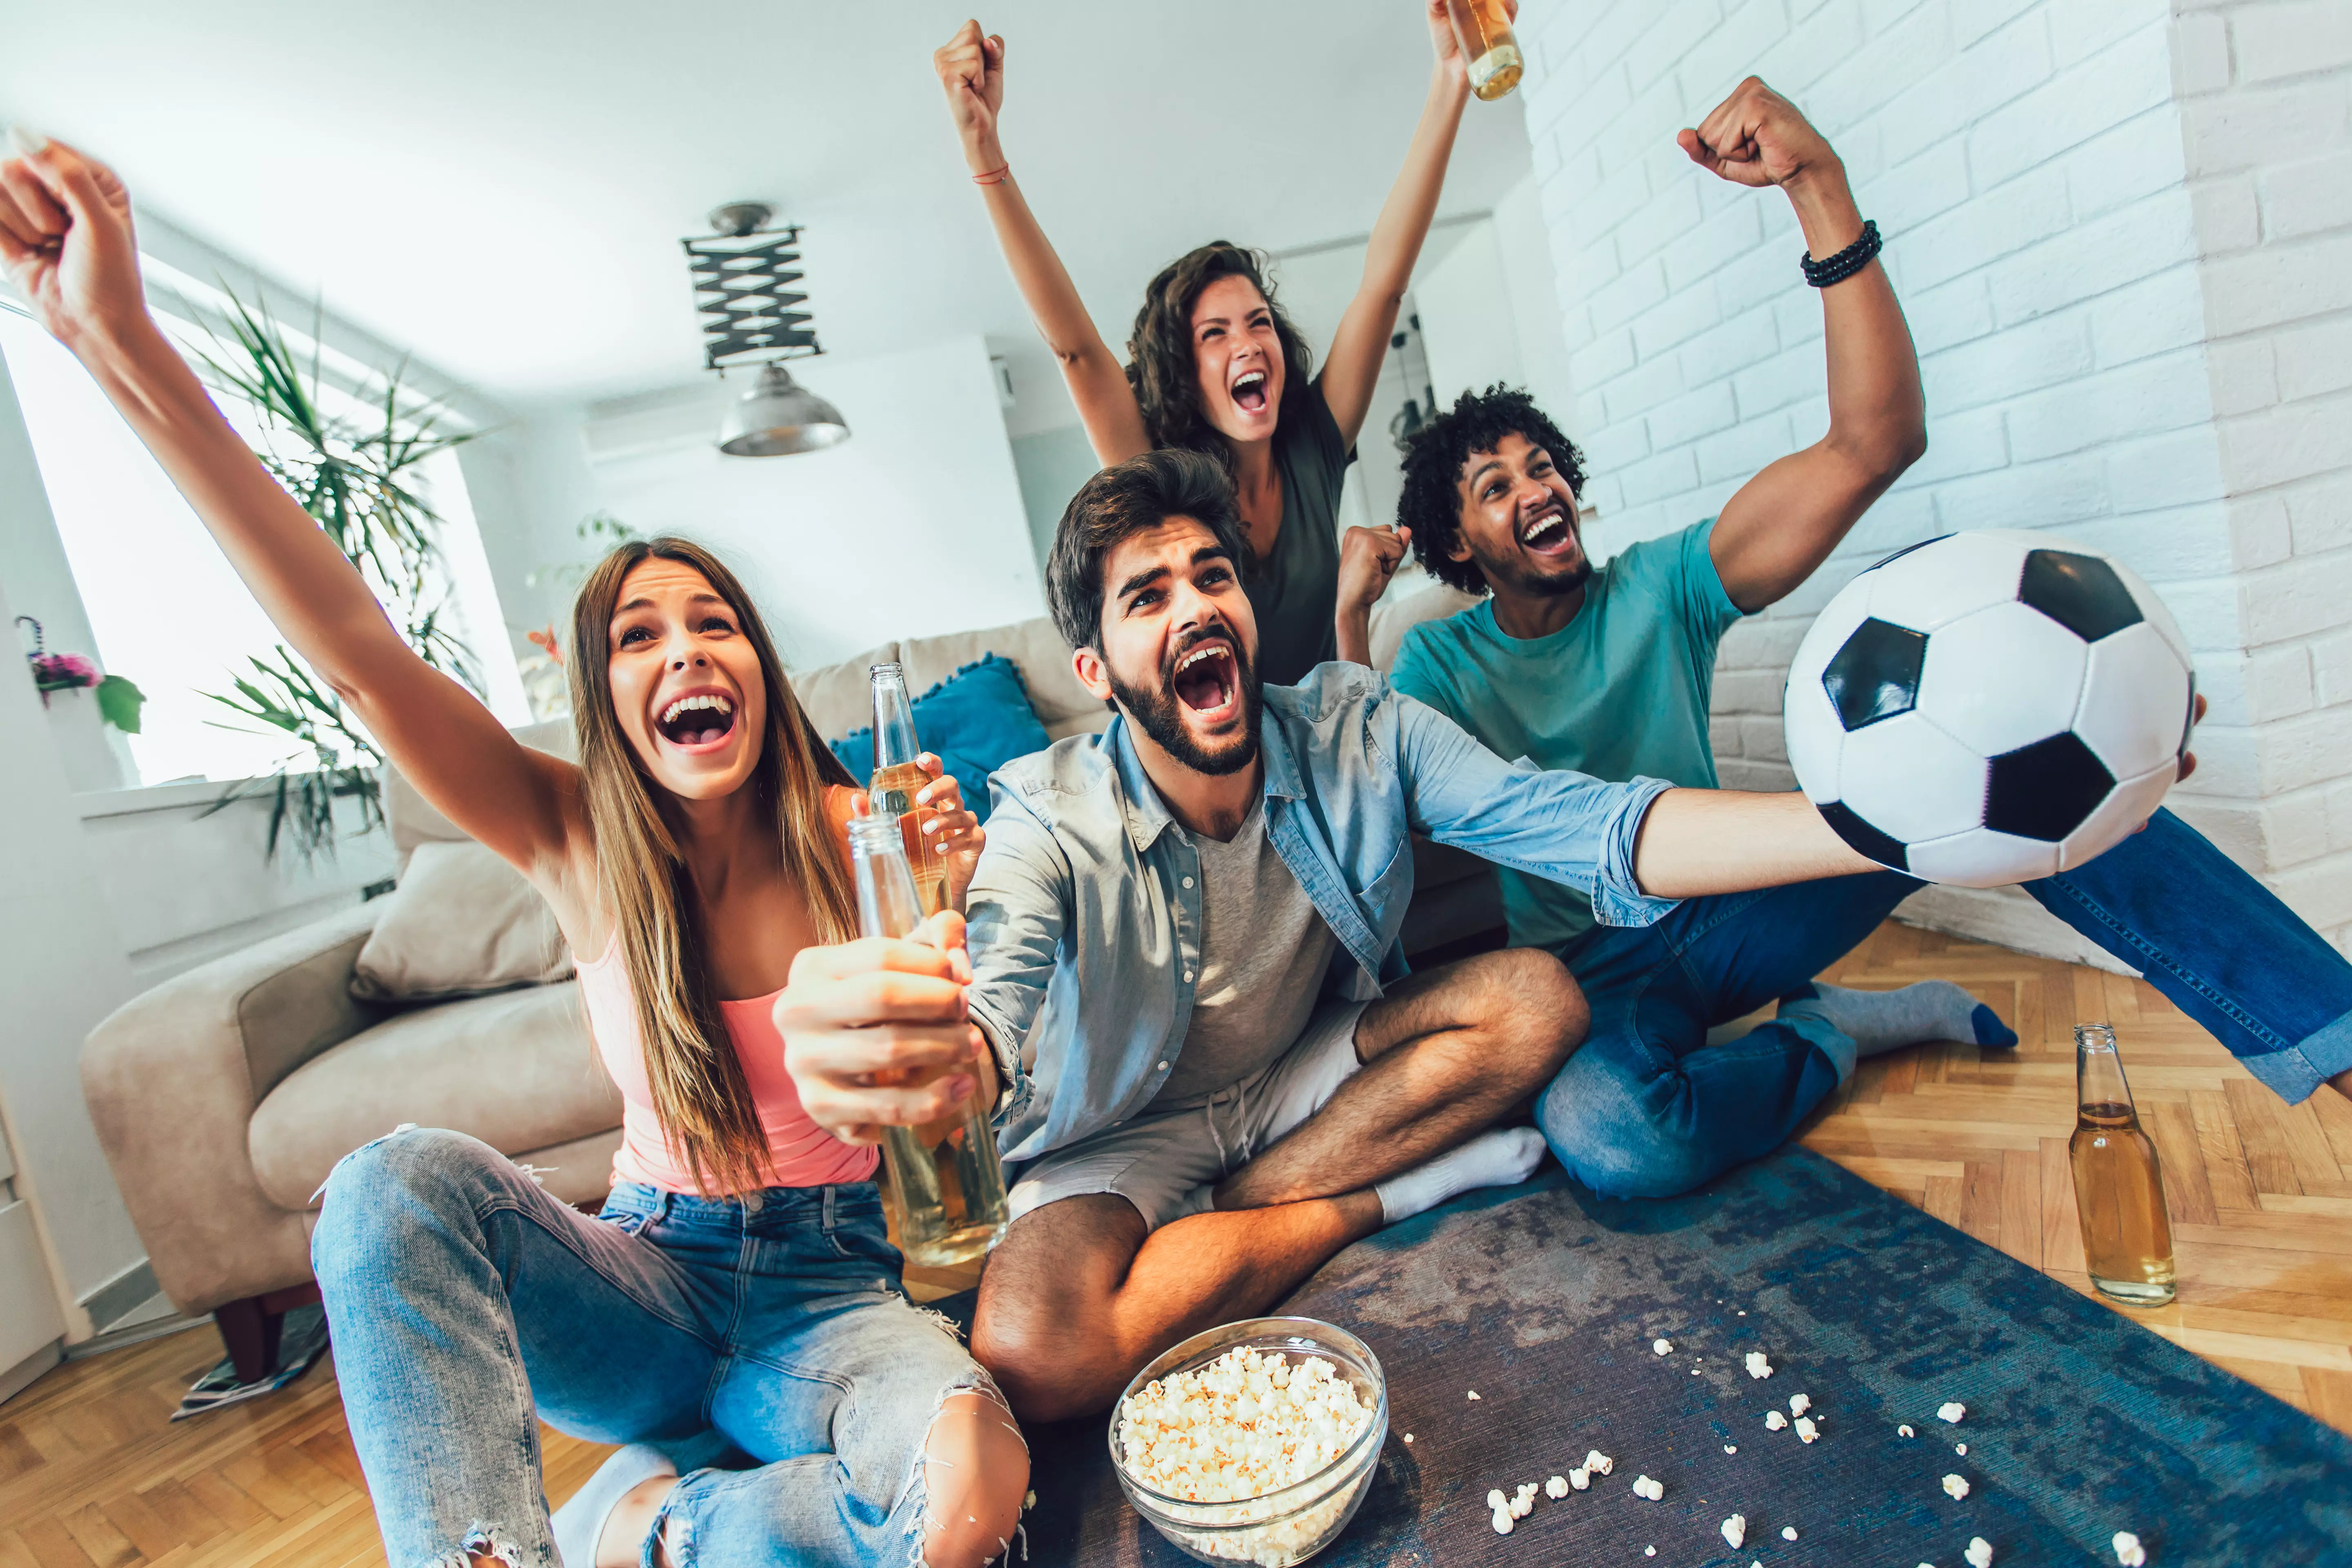 Jubelnde Fußballfans im Wohnzimmer, mit einem Fußball und Popcorn auf dem Tisch, eingefangen in einem Moment der Freude und des gemeinschaftlichen Miteinanders, perfekt für Fußballliebhaber, präsentiert von flaggenmeer